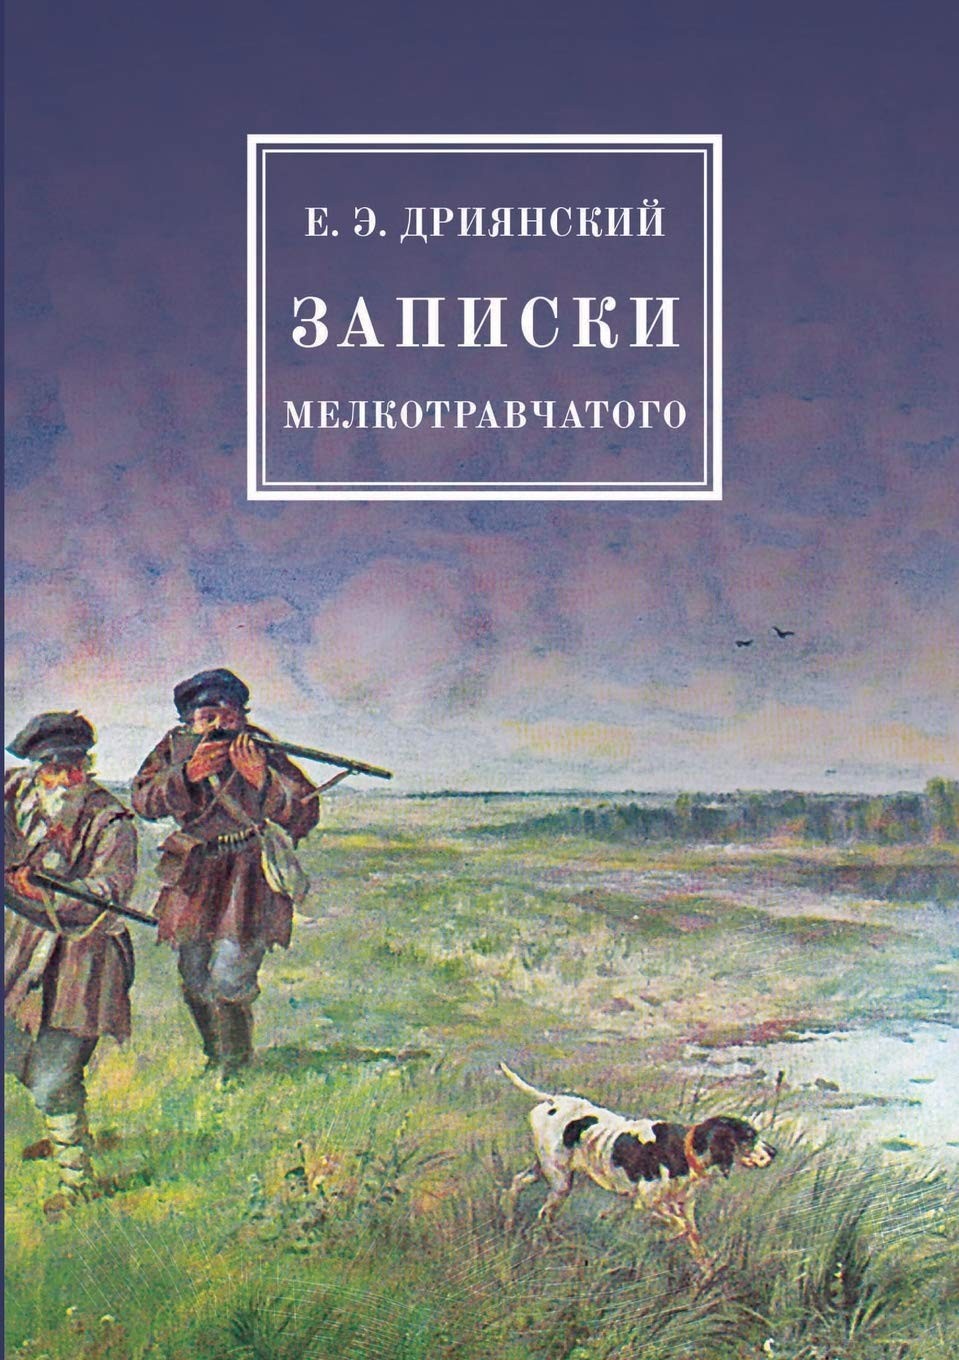 Русская охотничья литература. Список от Михаила Кречмара